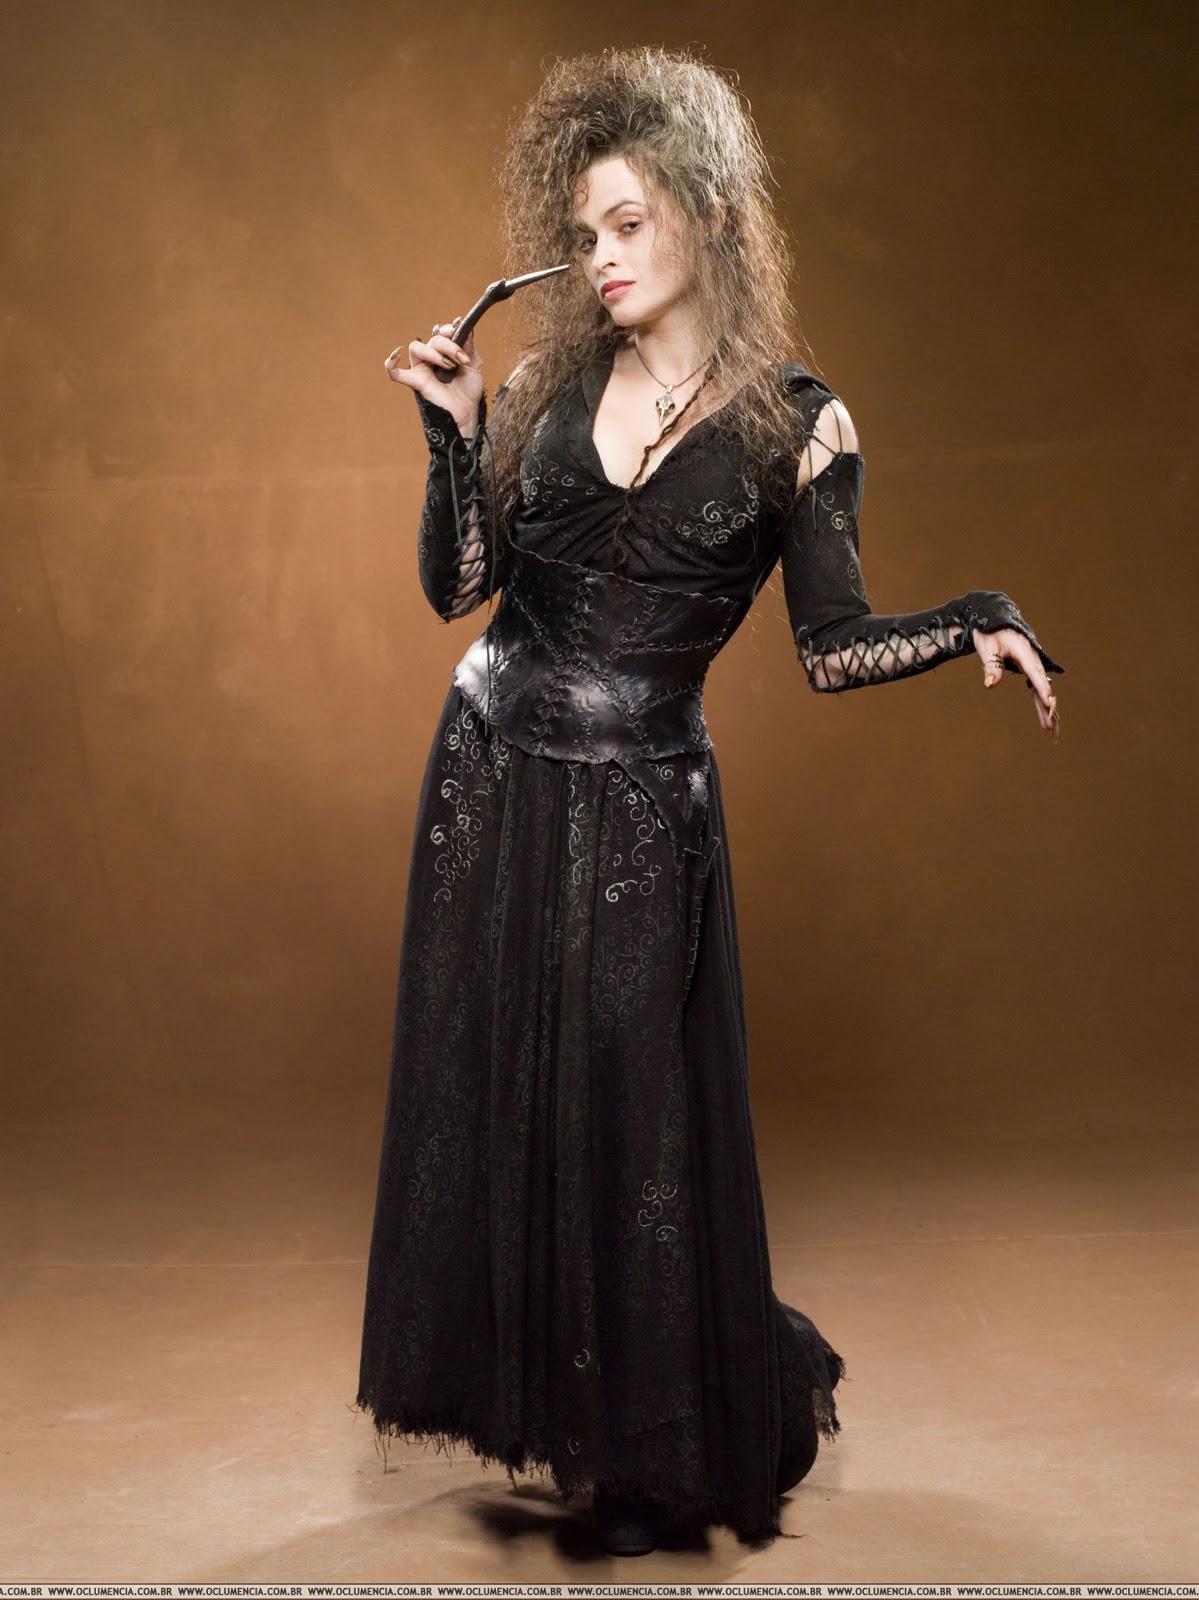 Nữ phản diện Bellatrix Lestrange đại diện phong cách Gothic